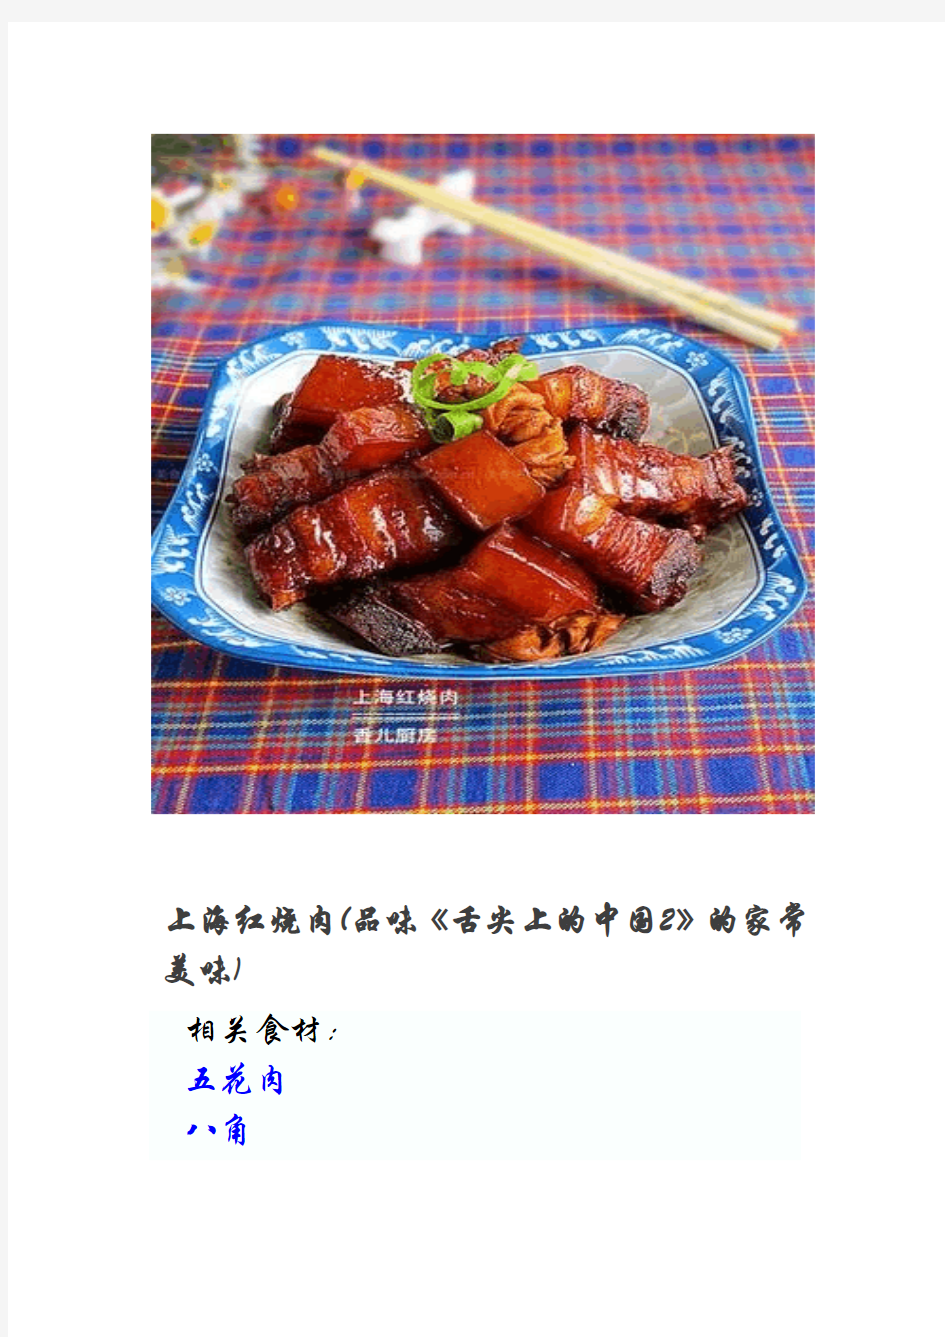 上海红烧肉(品味《舌尖上的中国2》的家常美味)